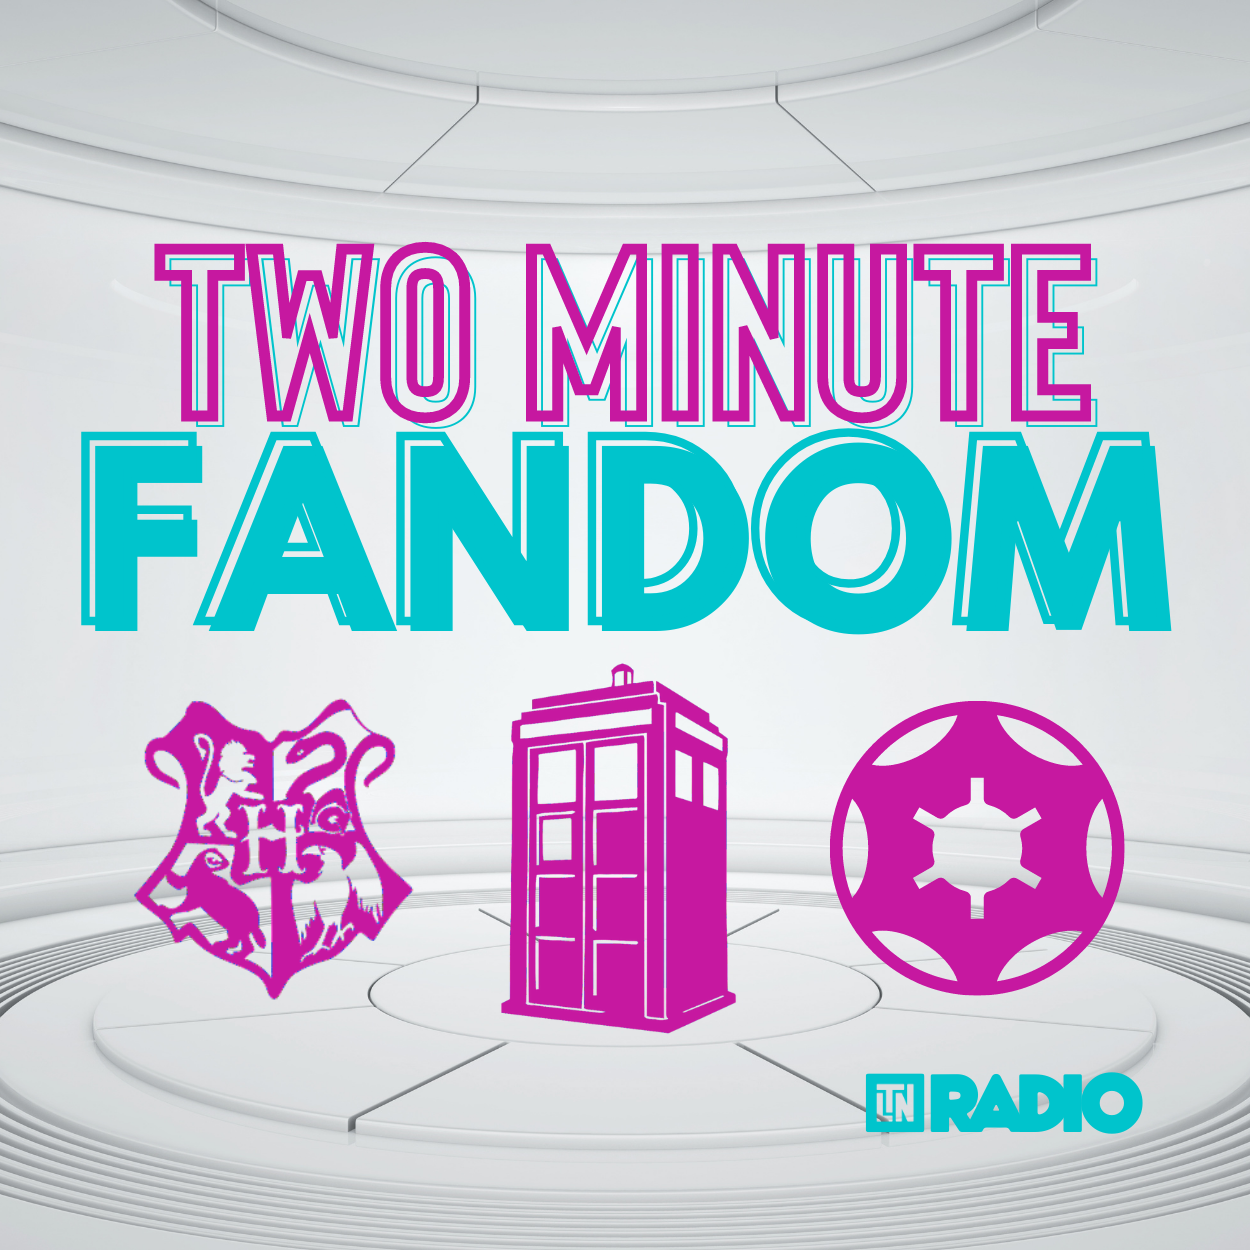 Two Minute Fandom | Hal Jordan in 2 Minutes